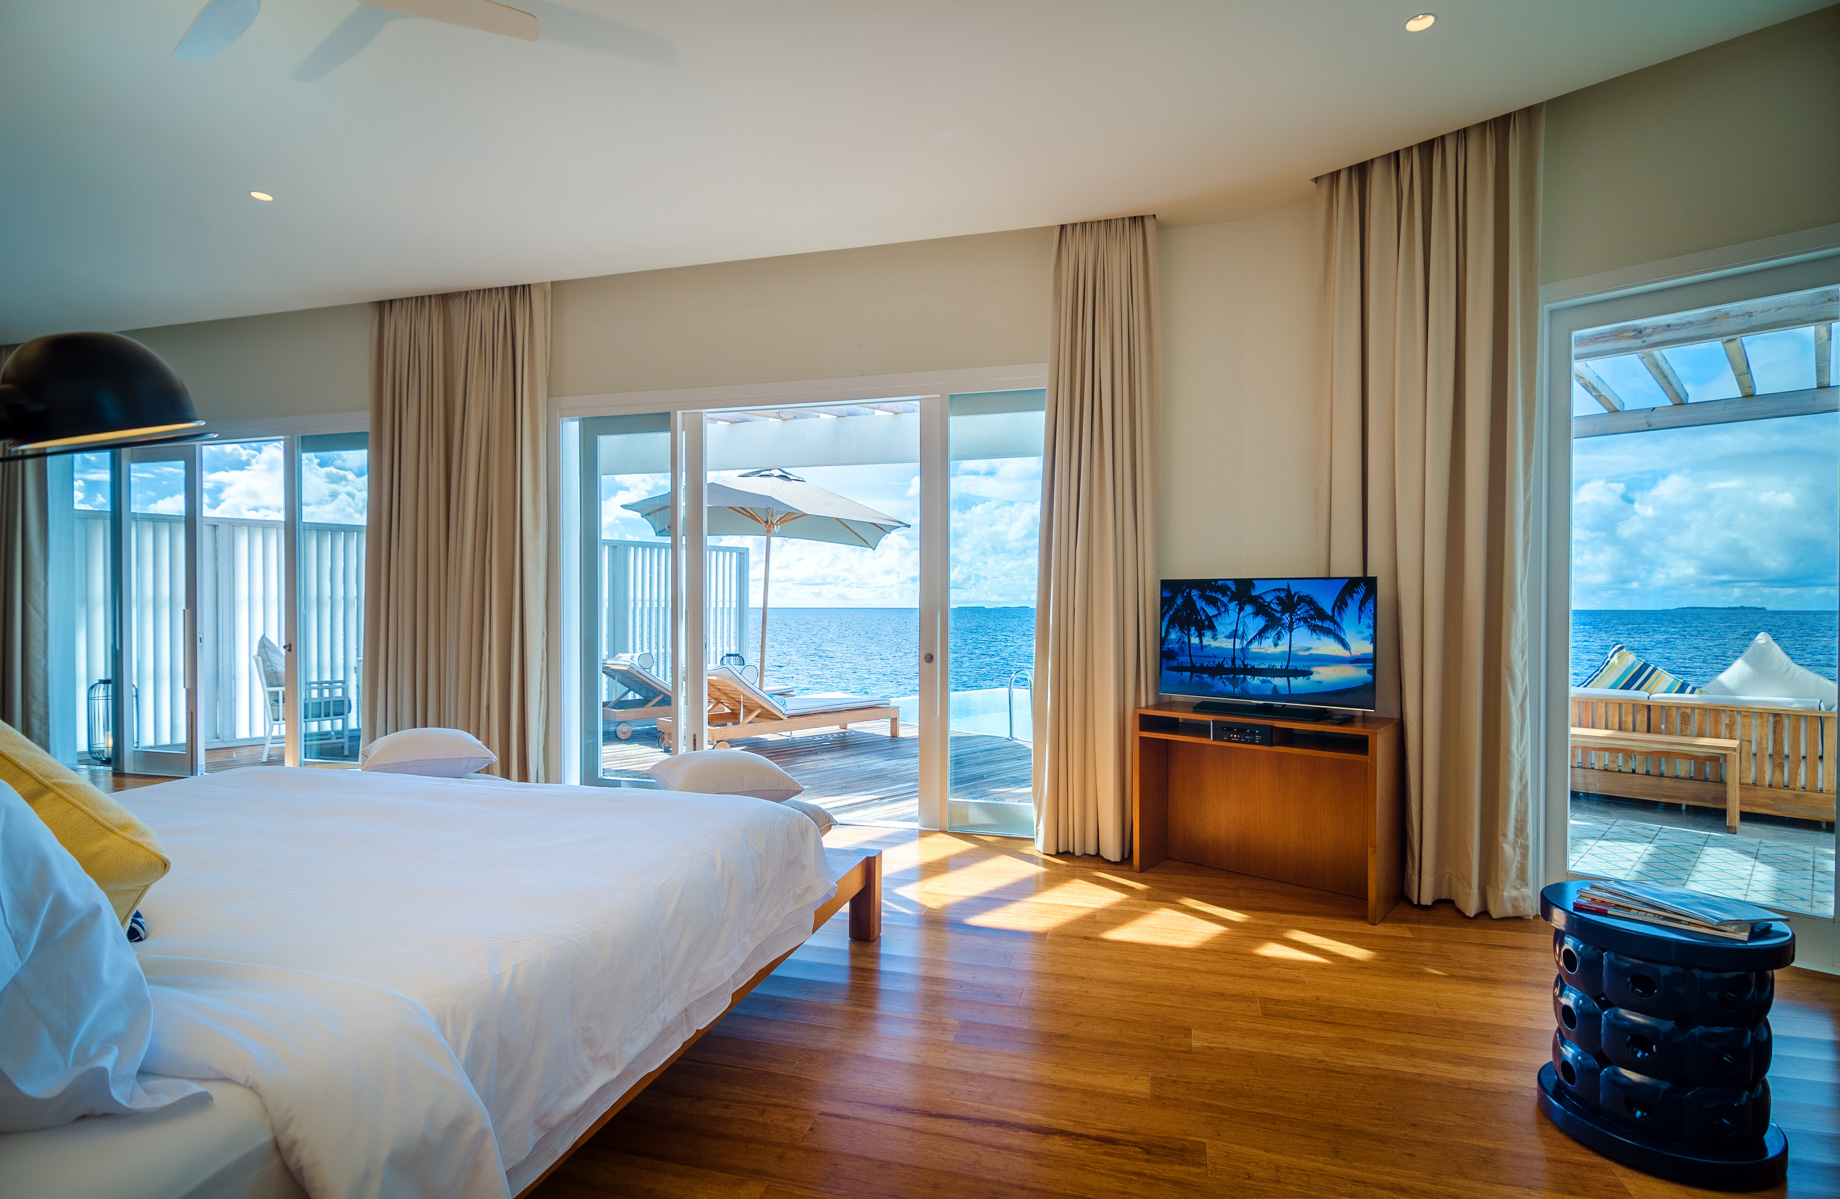 Amilla Fushi Resort and Residences – Baa Atoll, Maldives – Reef Water Villa Bedroom View